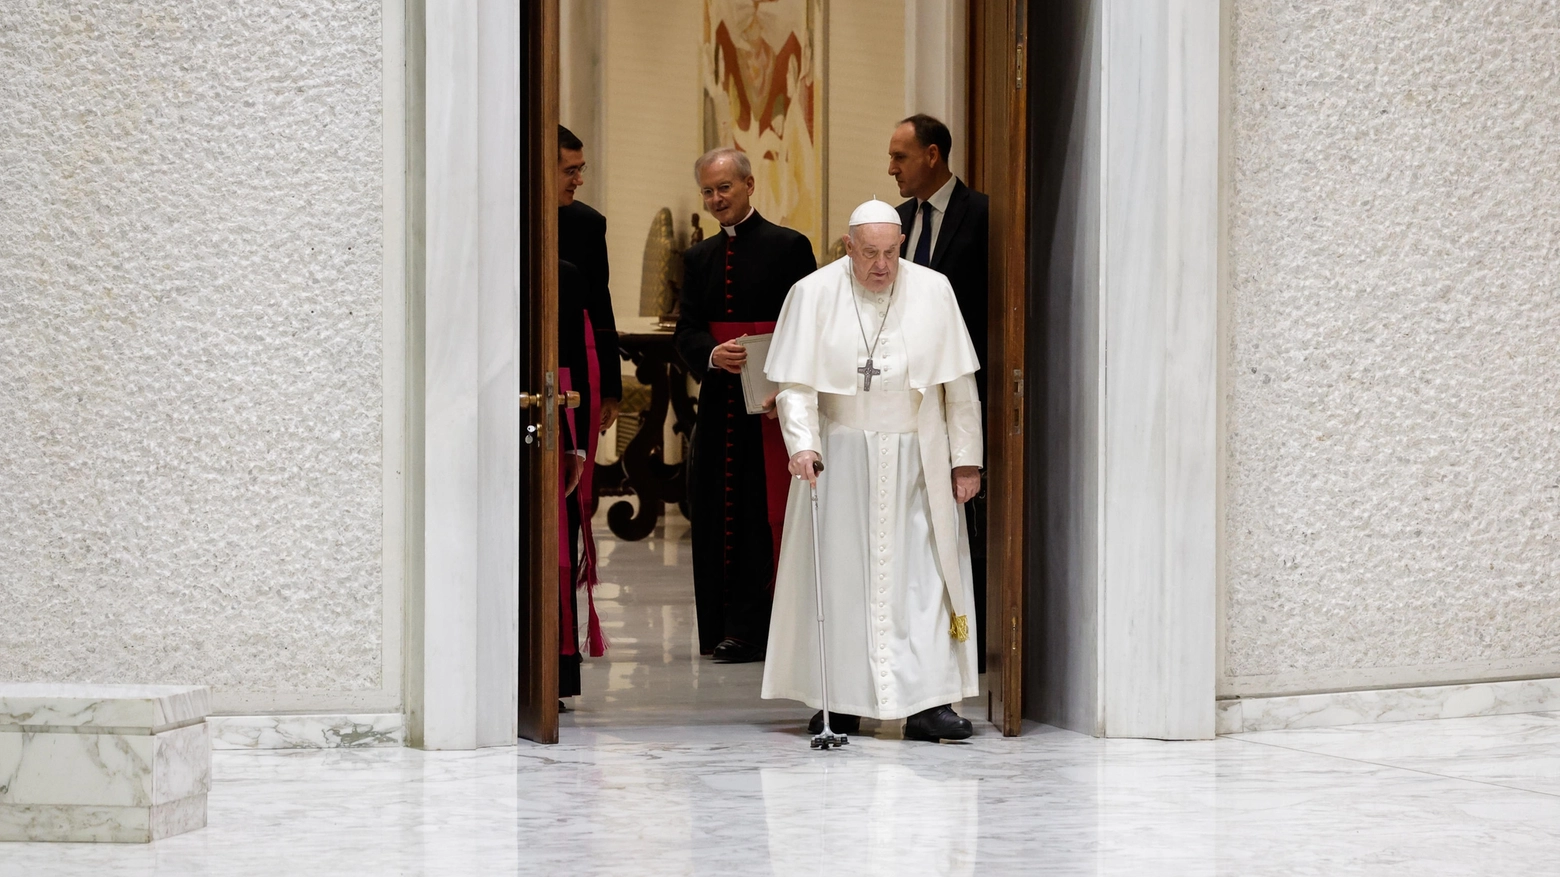 Il Pontefice in Aula Paolo VI si rivolge ai fedeli: “Con questa influenza la voce non è bella”. Martedì i medici gli hanno consigliato di annullare il viaggio a Dubai per il summit sul clima